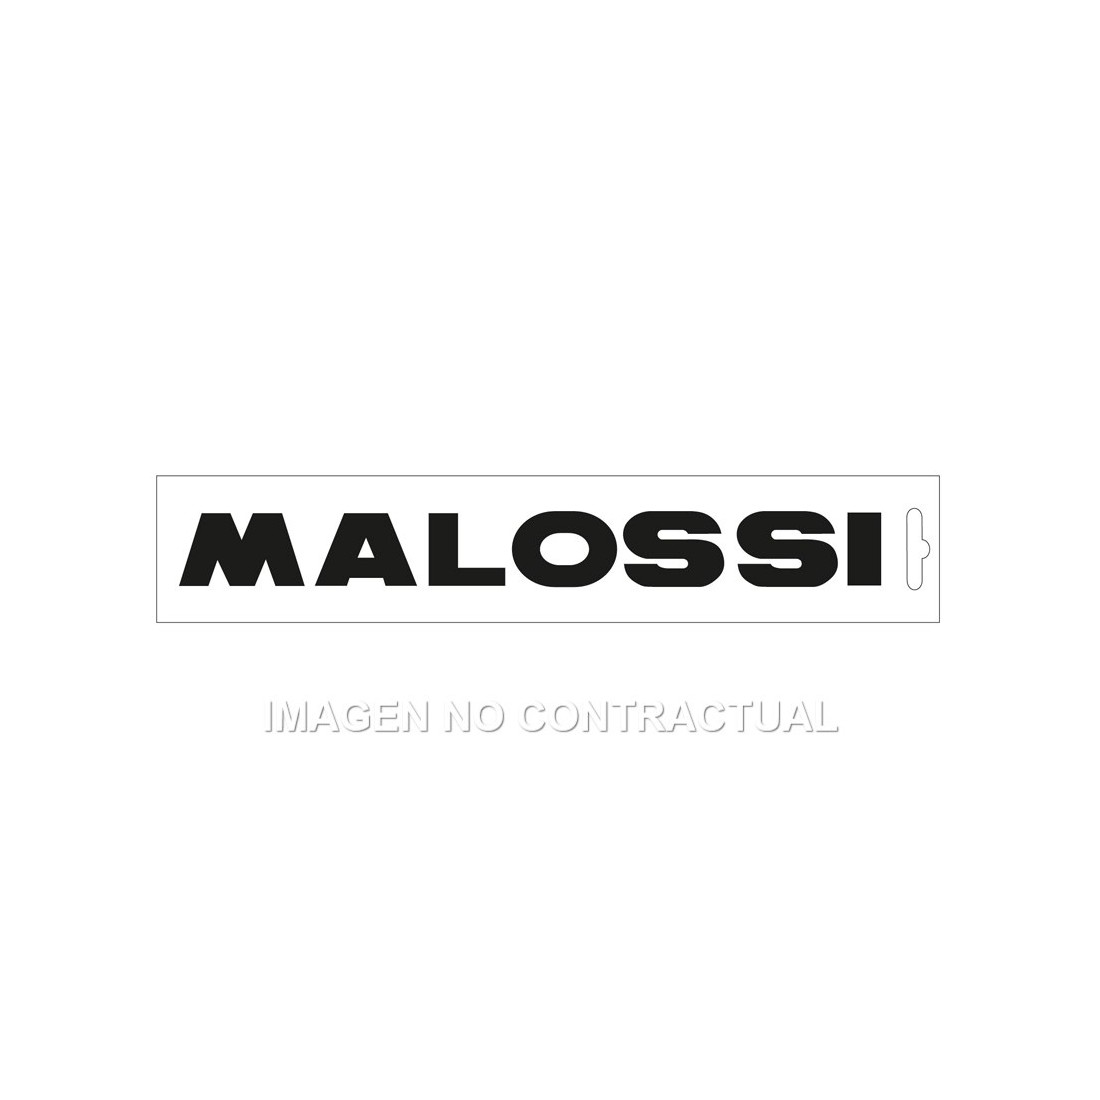 Adhesivo Malossi Negro 22 cm